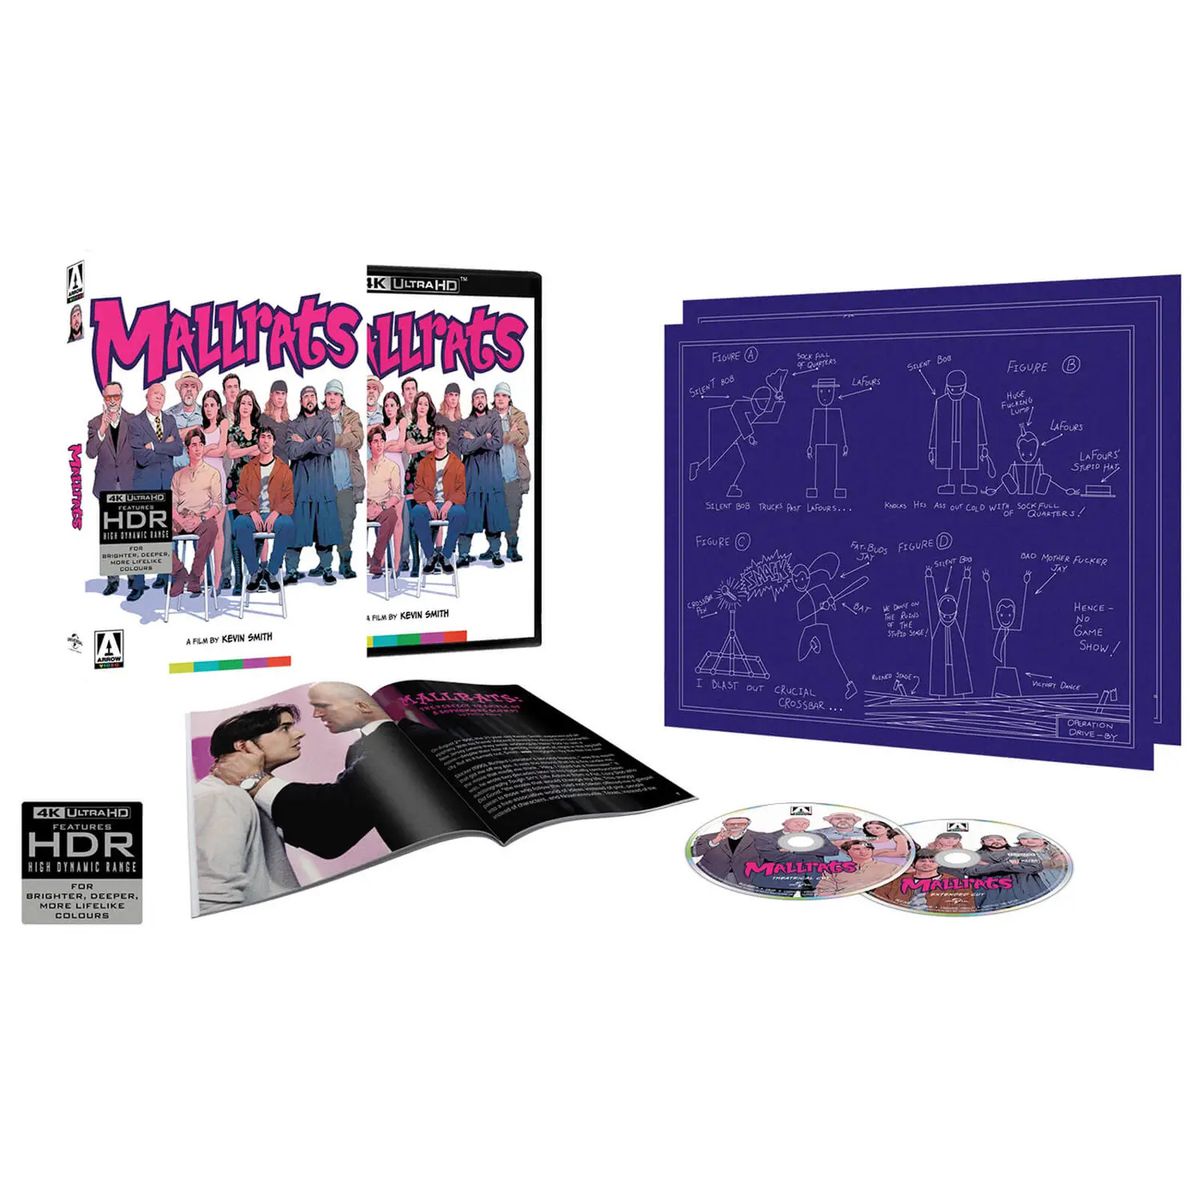 En specialutgåva av Mallrats från Arrow-video som innehåller flera Blu-ray-bilder, ett häfte och ett diagram över Jay och Silent Bob.